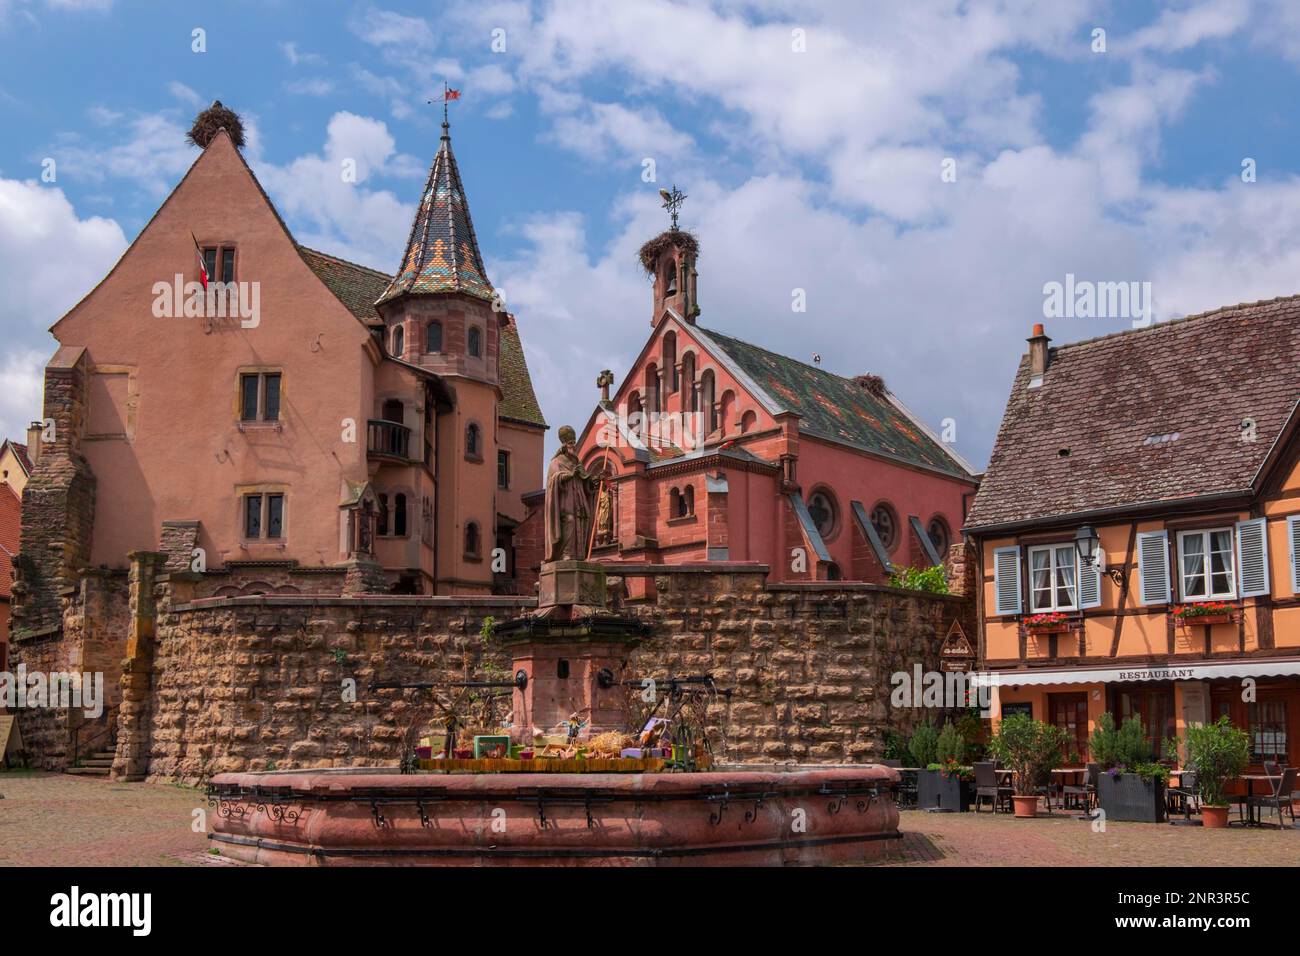 Castle and St. Leo Chapel at Place de Chateau St. Leon, Eguisheim, Alsace, France Stock Photo